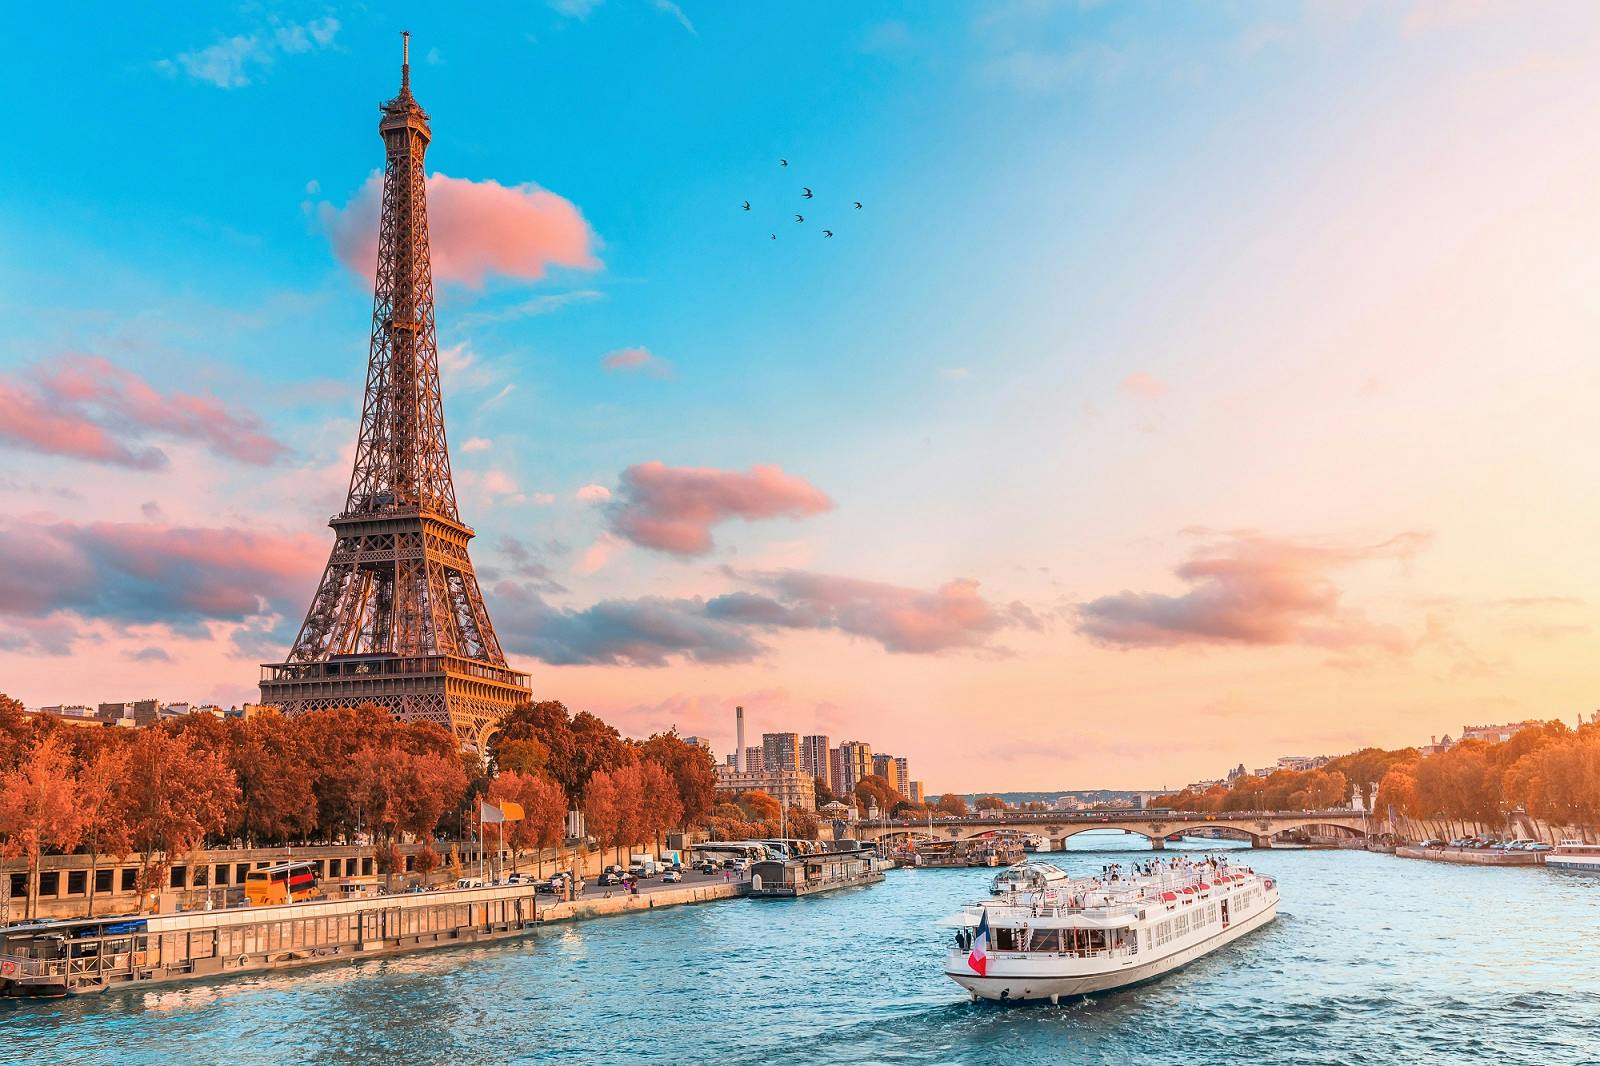 Croisière sur la Seine avec dégustation de crêpes françaises près de la tour Eiffel